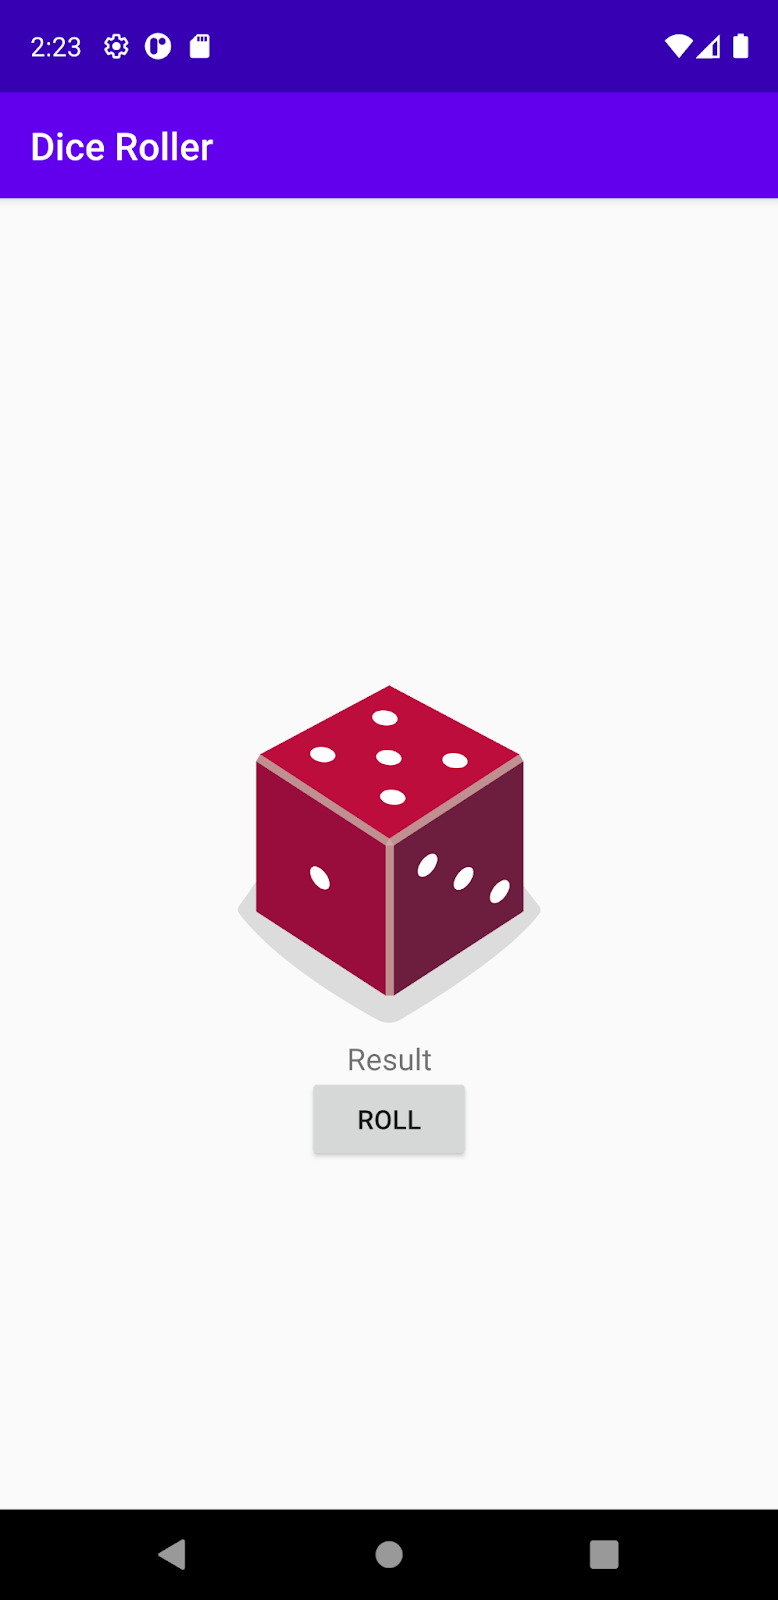 プレースホルダとしてボックスに「Result」と表示されている DiceRoller アプリ。